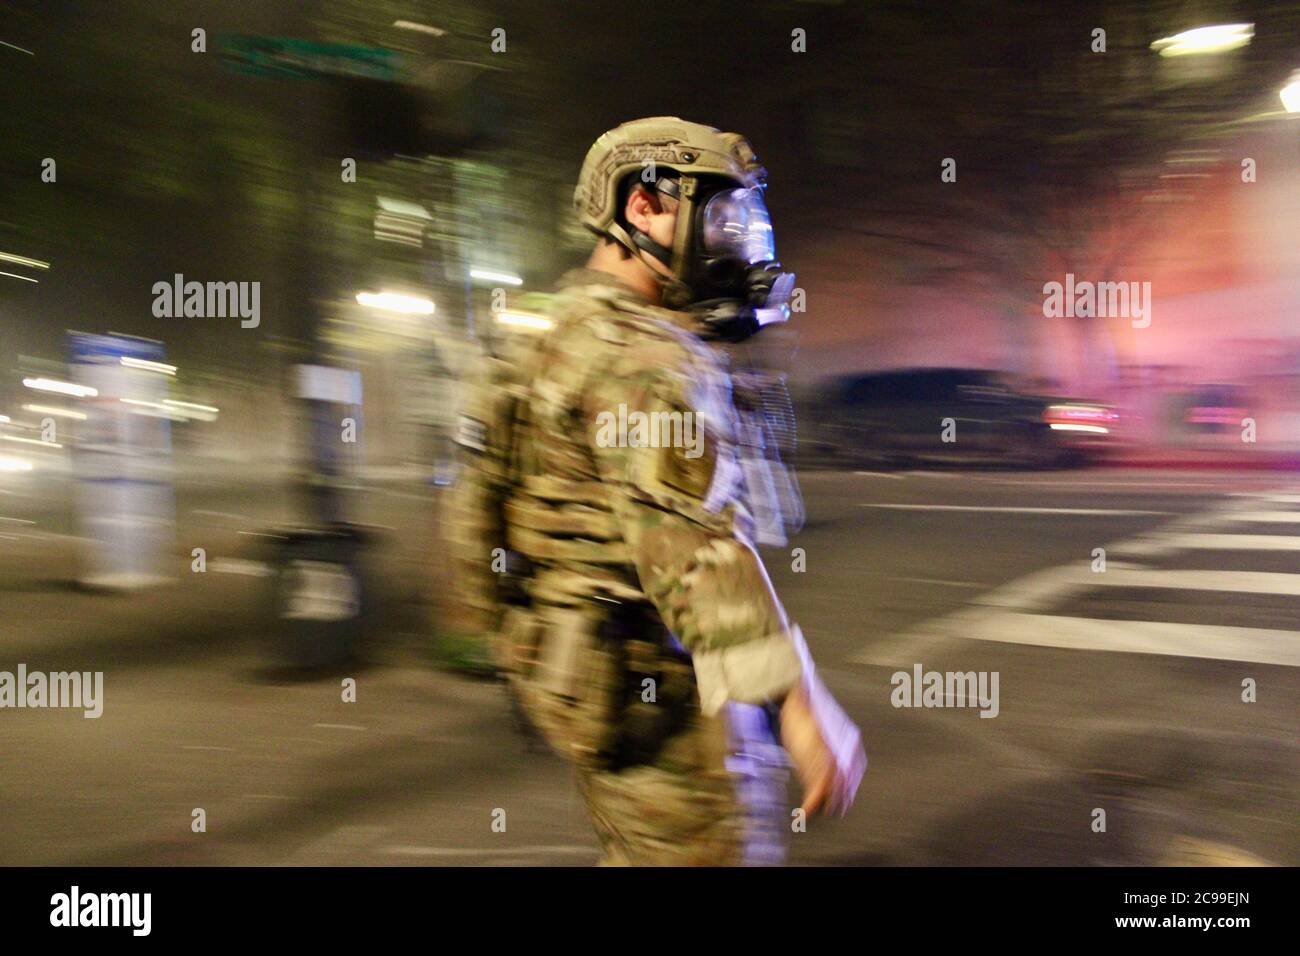 Portland, Oregon, USA. Juli 2020. Portland Protest: Bundesagenten Tränengas Demonstranten und jeder in der Innenstadt Nachbarschaft, die meisten von ihnen friedlich und unschuldig. Quelle: Amy Katz/ZUMA Wire/Alamy Live News Stockfoto